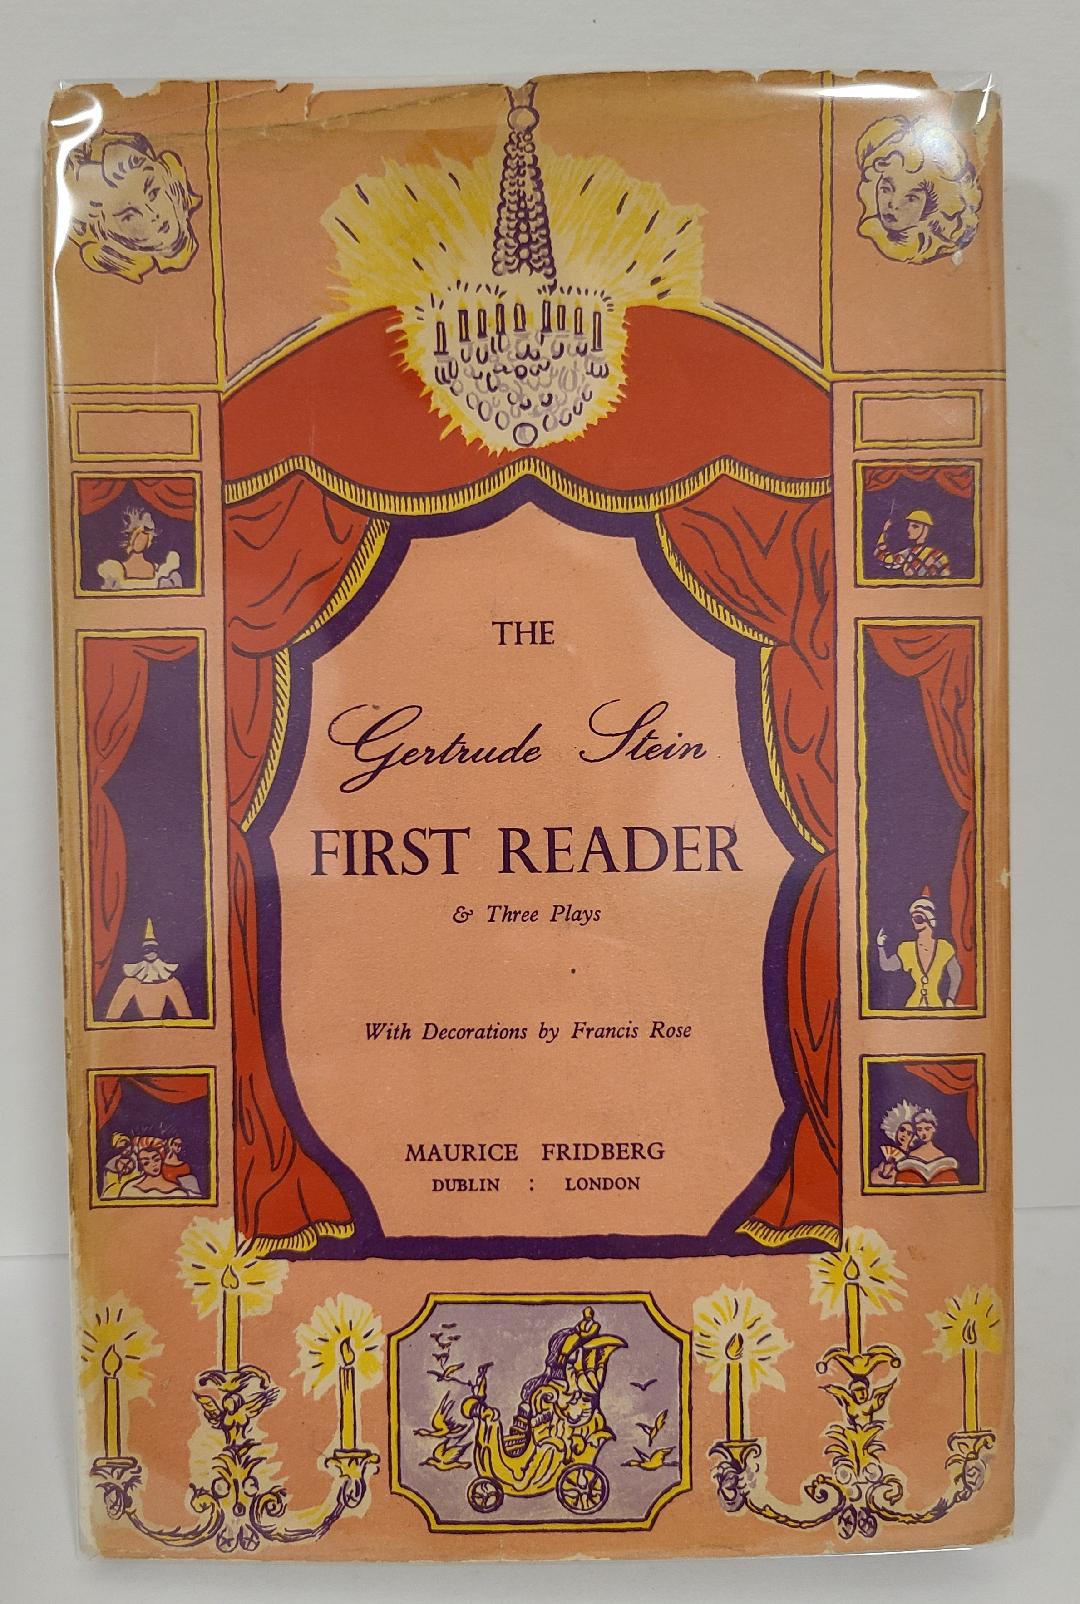 The First Reader - Gertrude Stein